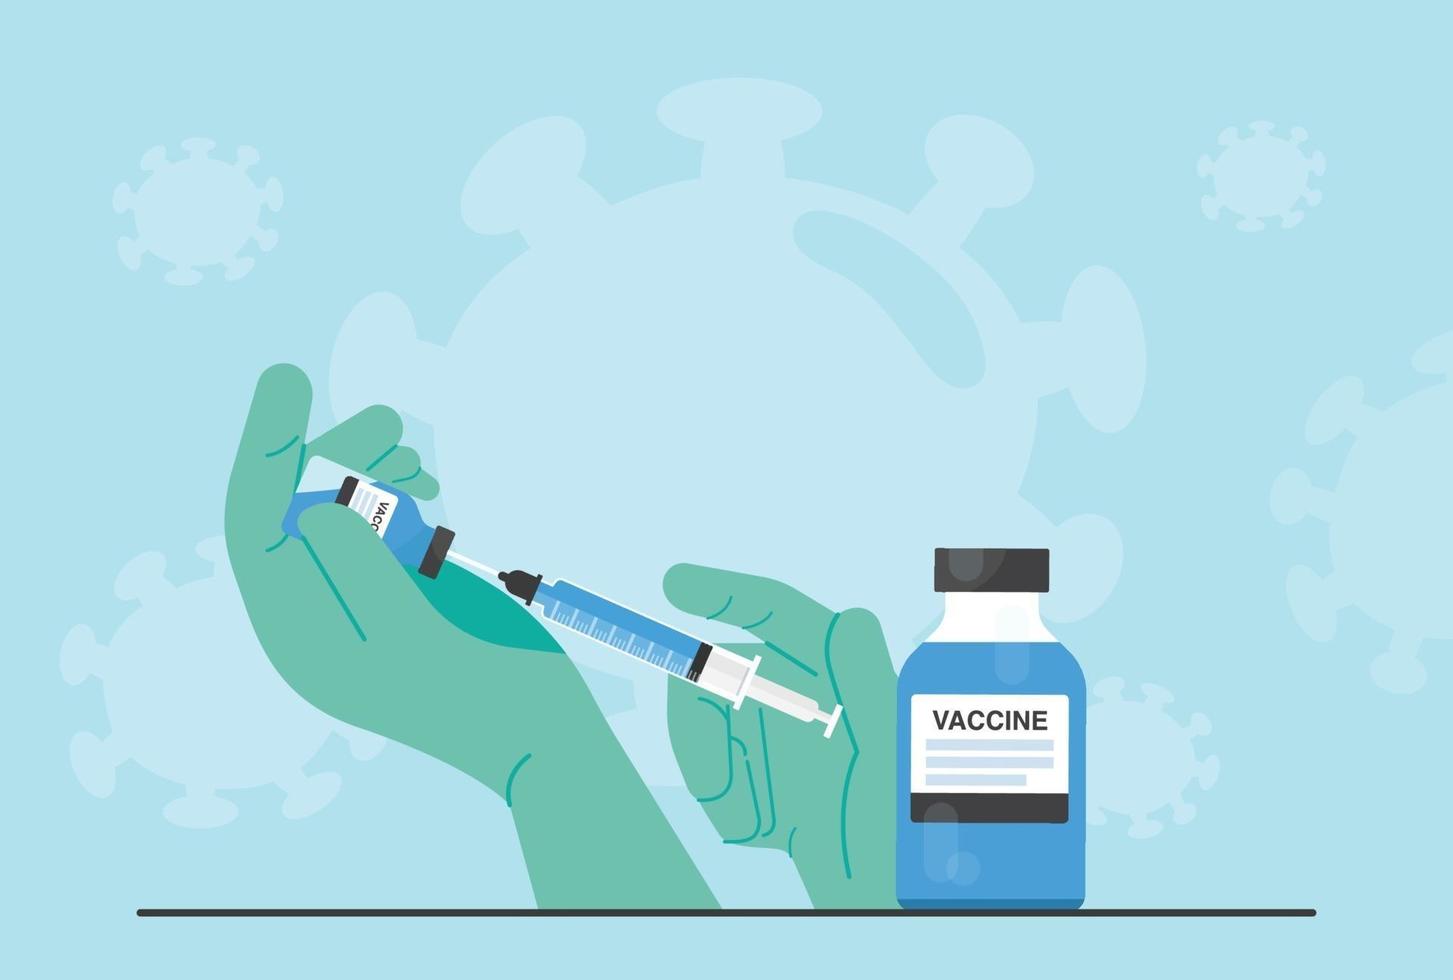 uma vacina contra o coronavírus, covid-19, foi distribuída para injetar pessoas em risco. vetor